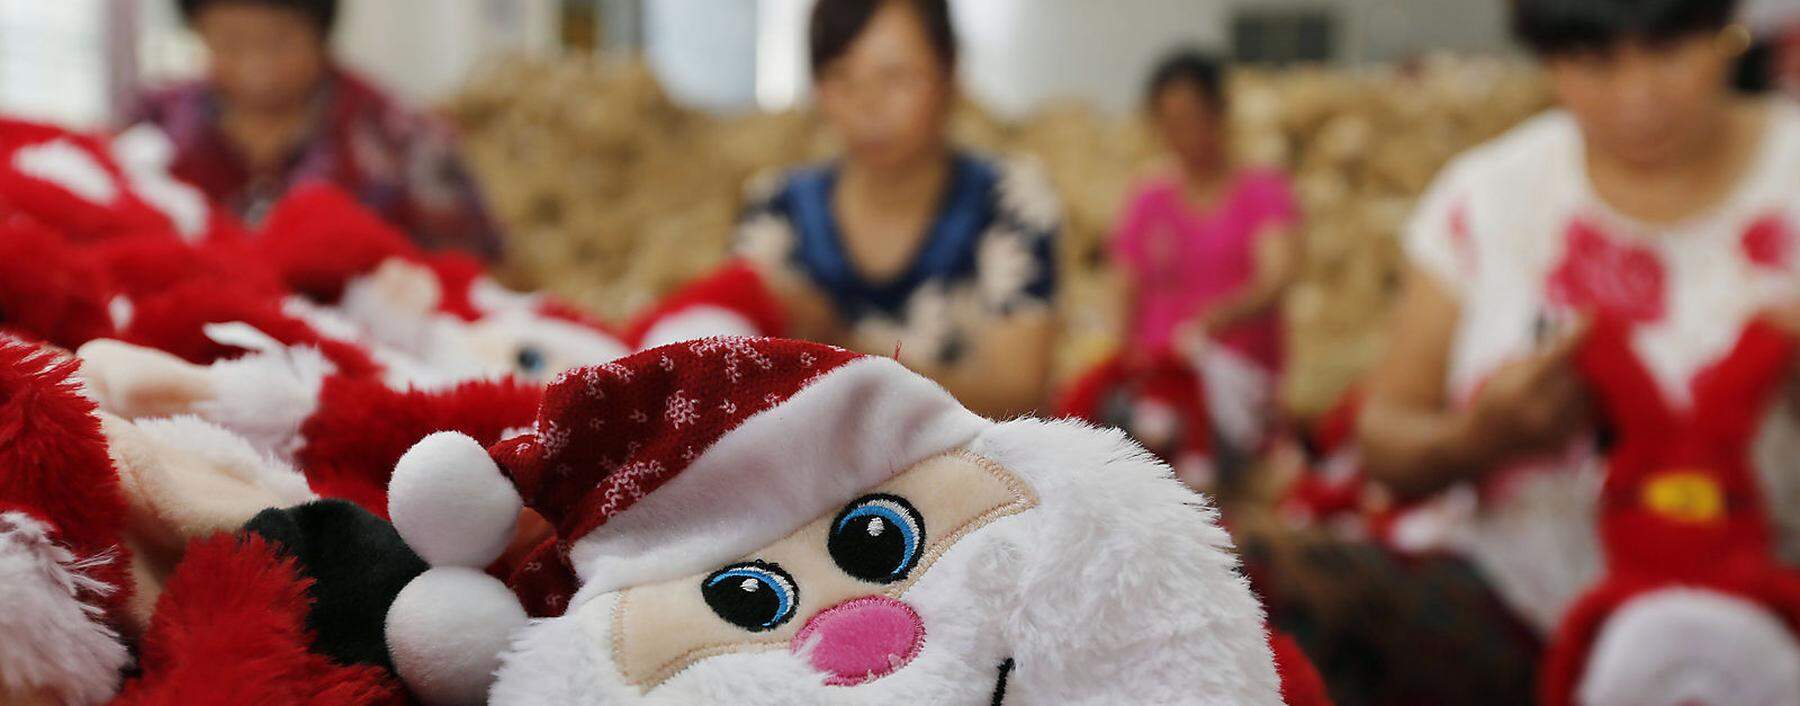 Die Weihnachtsmannproduktion in China ist nicht in Gefahr. Aber in High-Tech-Branchen suchen viele Unternehmen mittlerweile wieder die Nähe zu ihrer Heimat. 